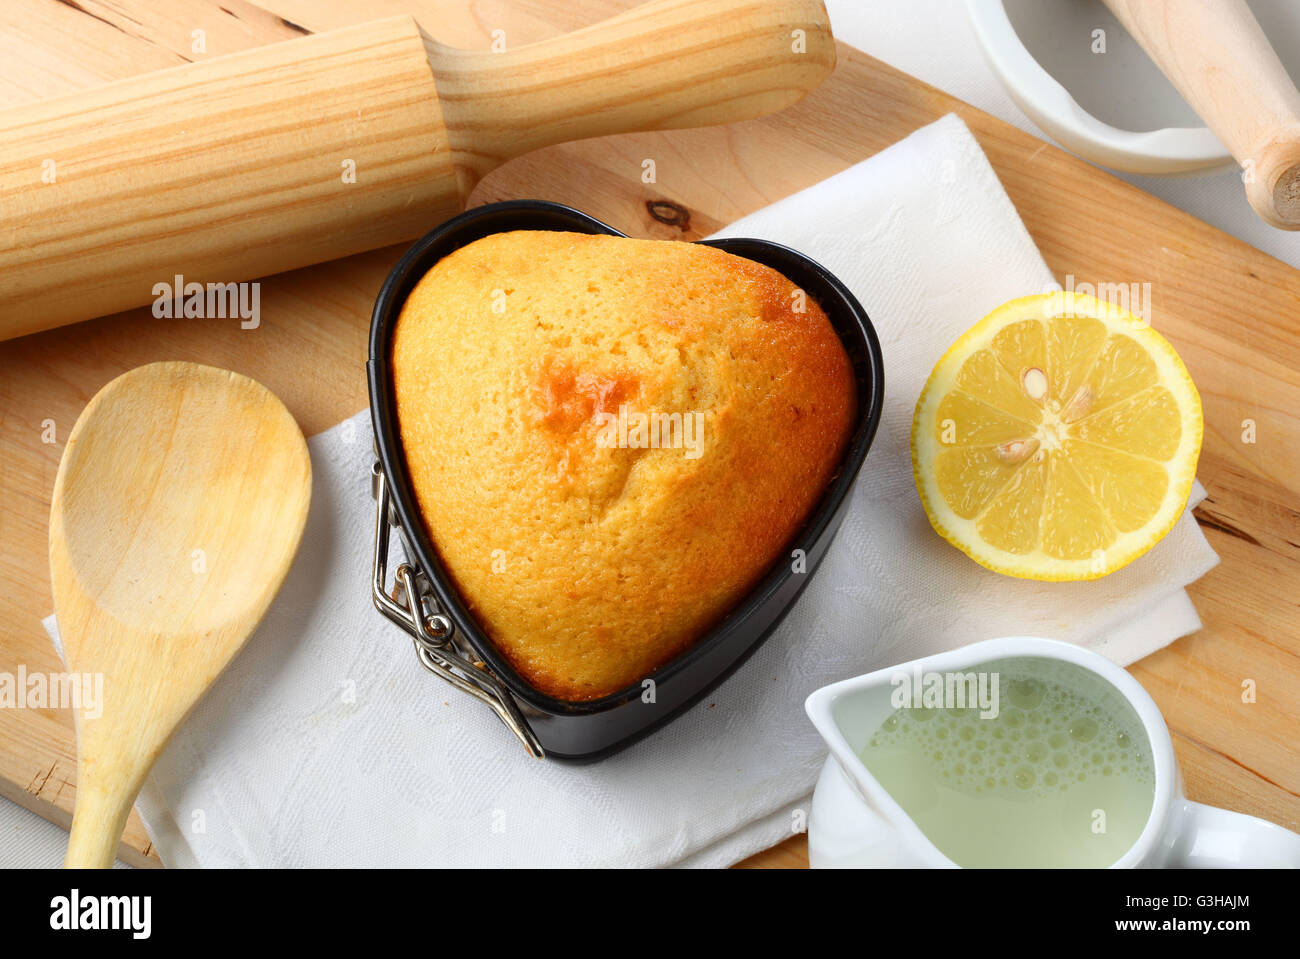 Muffin en forme de coeur avec des ingrédients Banque D'Images